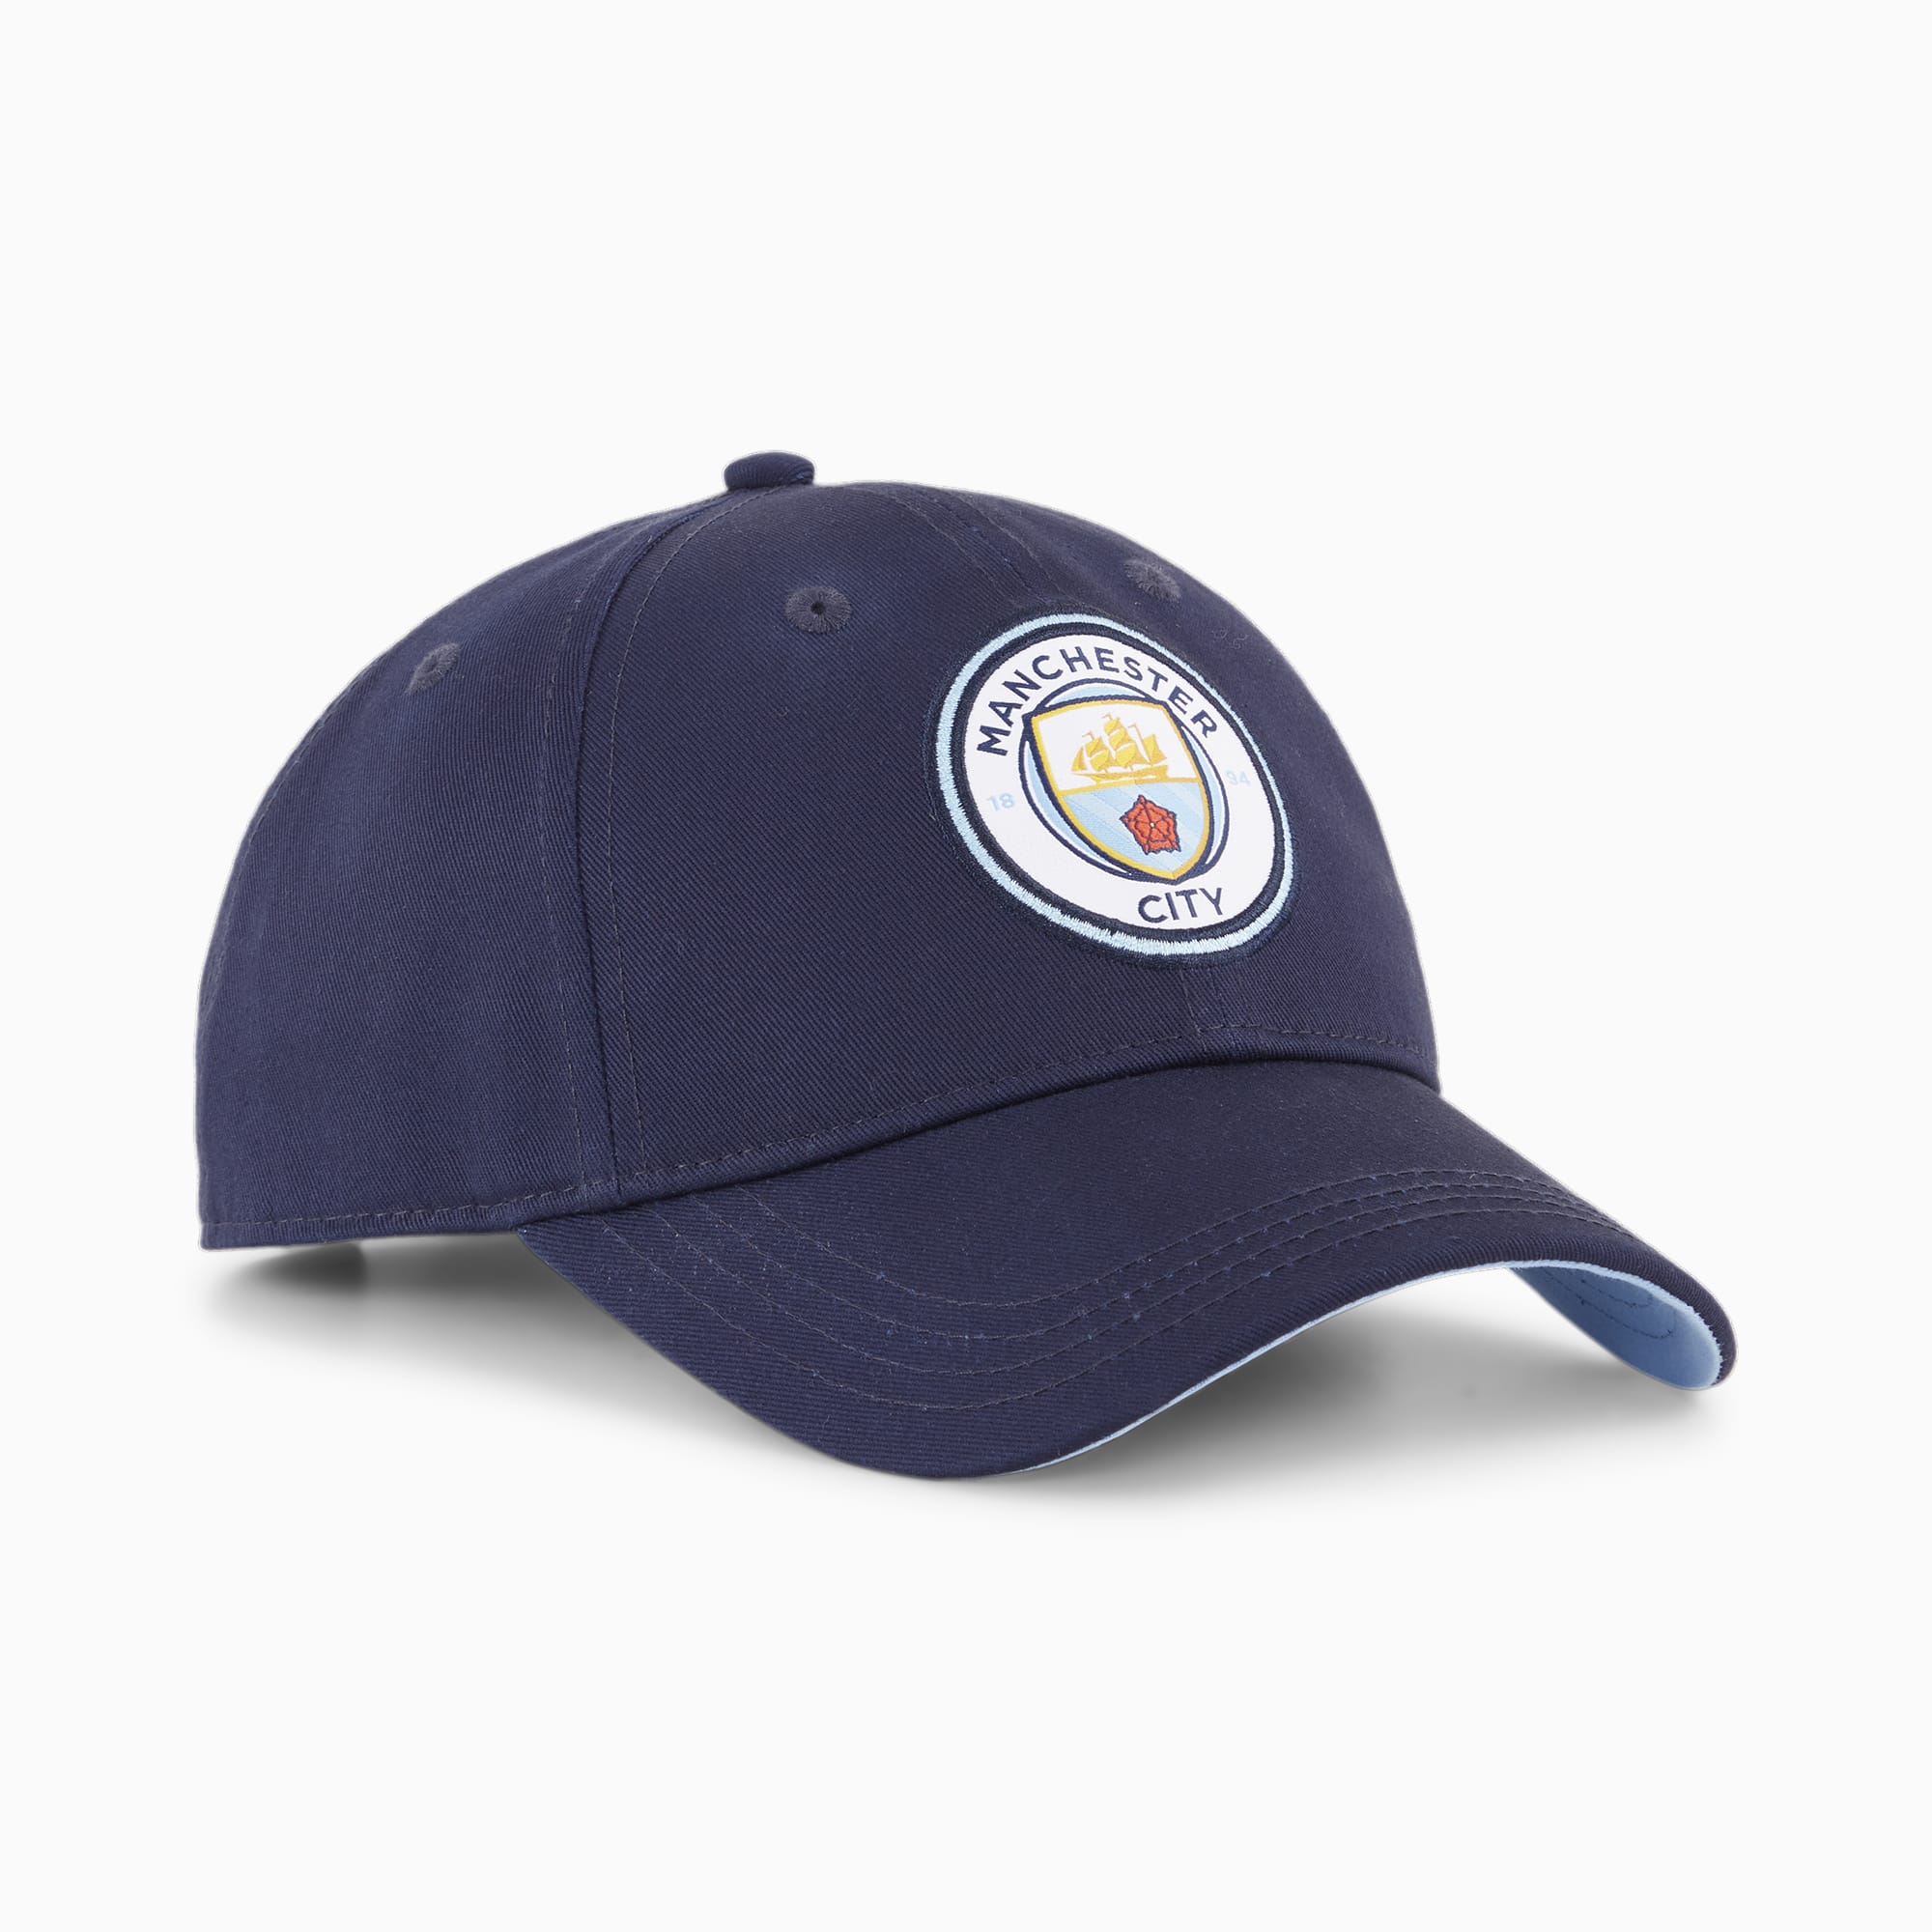 Manchester City Baseball Cap, blue